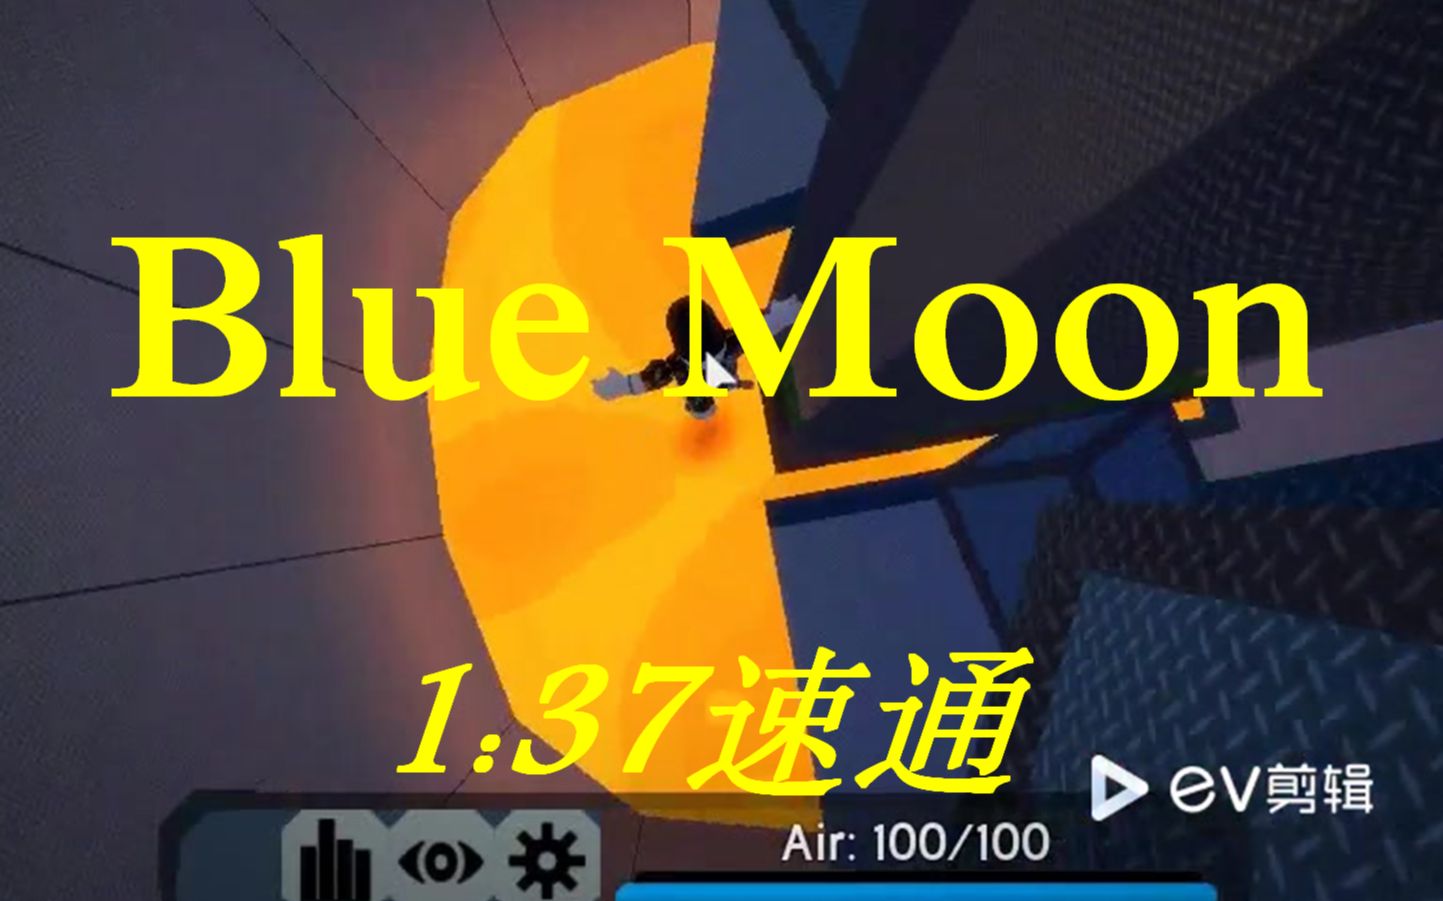 Roblox Fe2 Mt Blue Moon Crazy 哔哩哔哩 つロ干杯 Bilibili